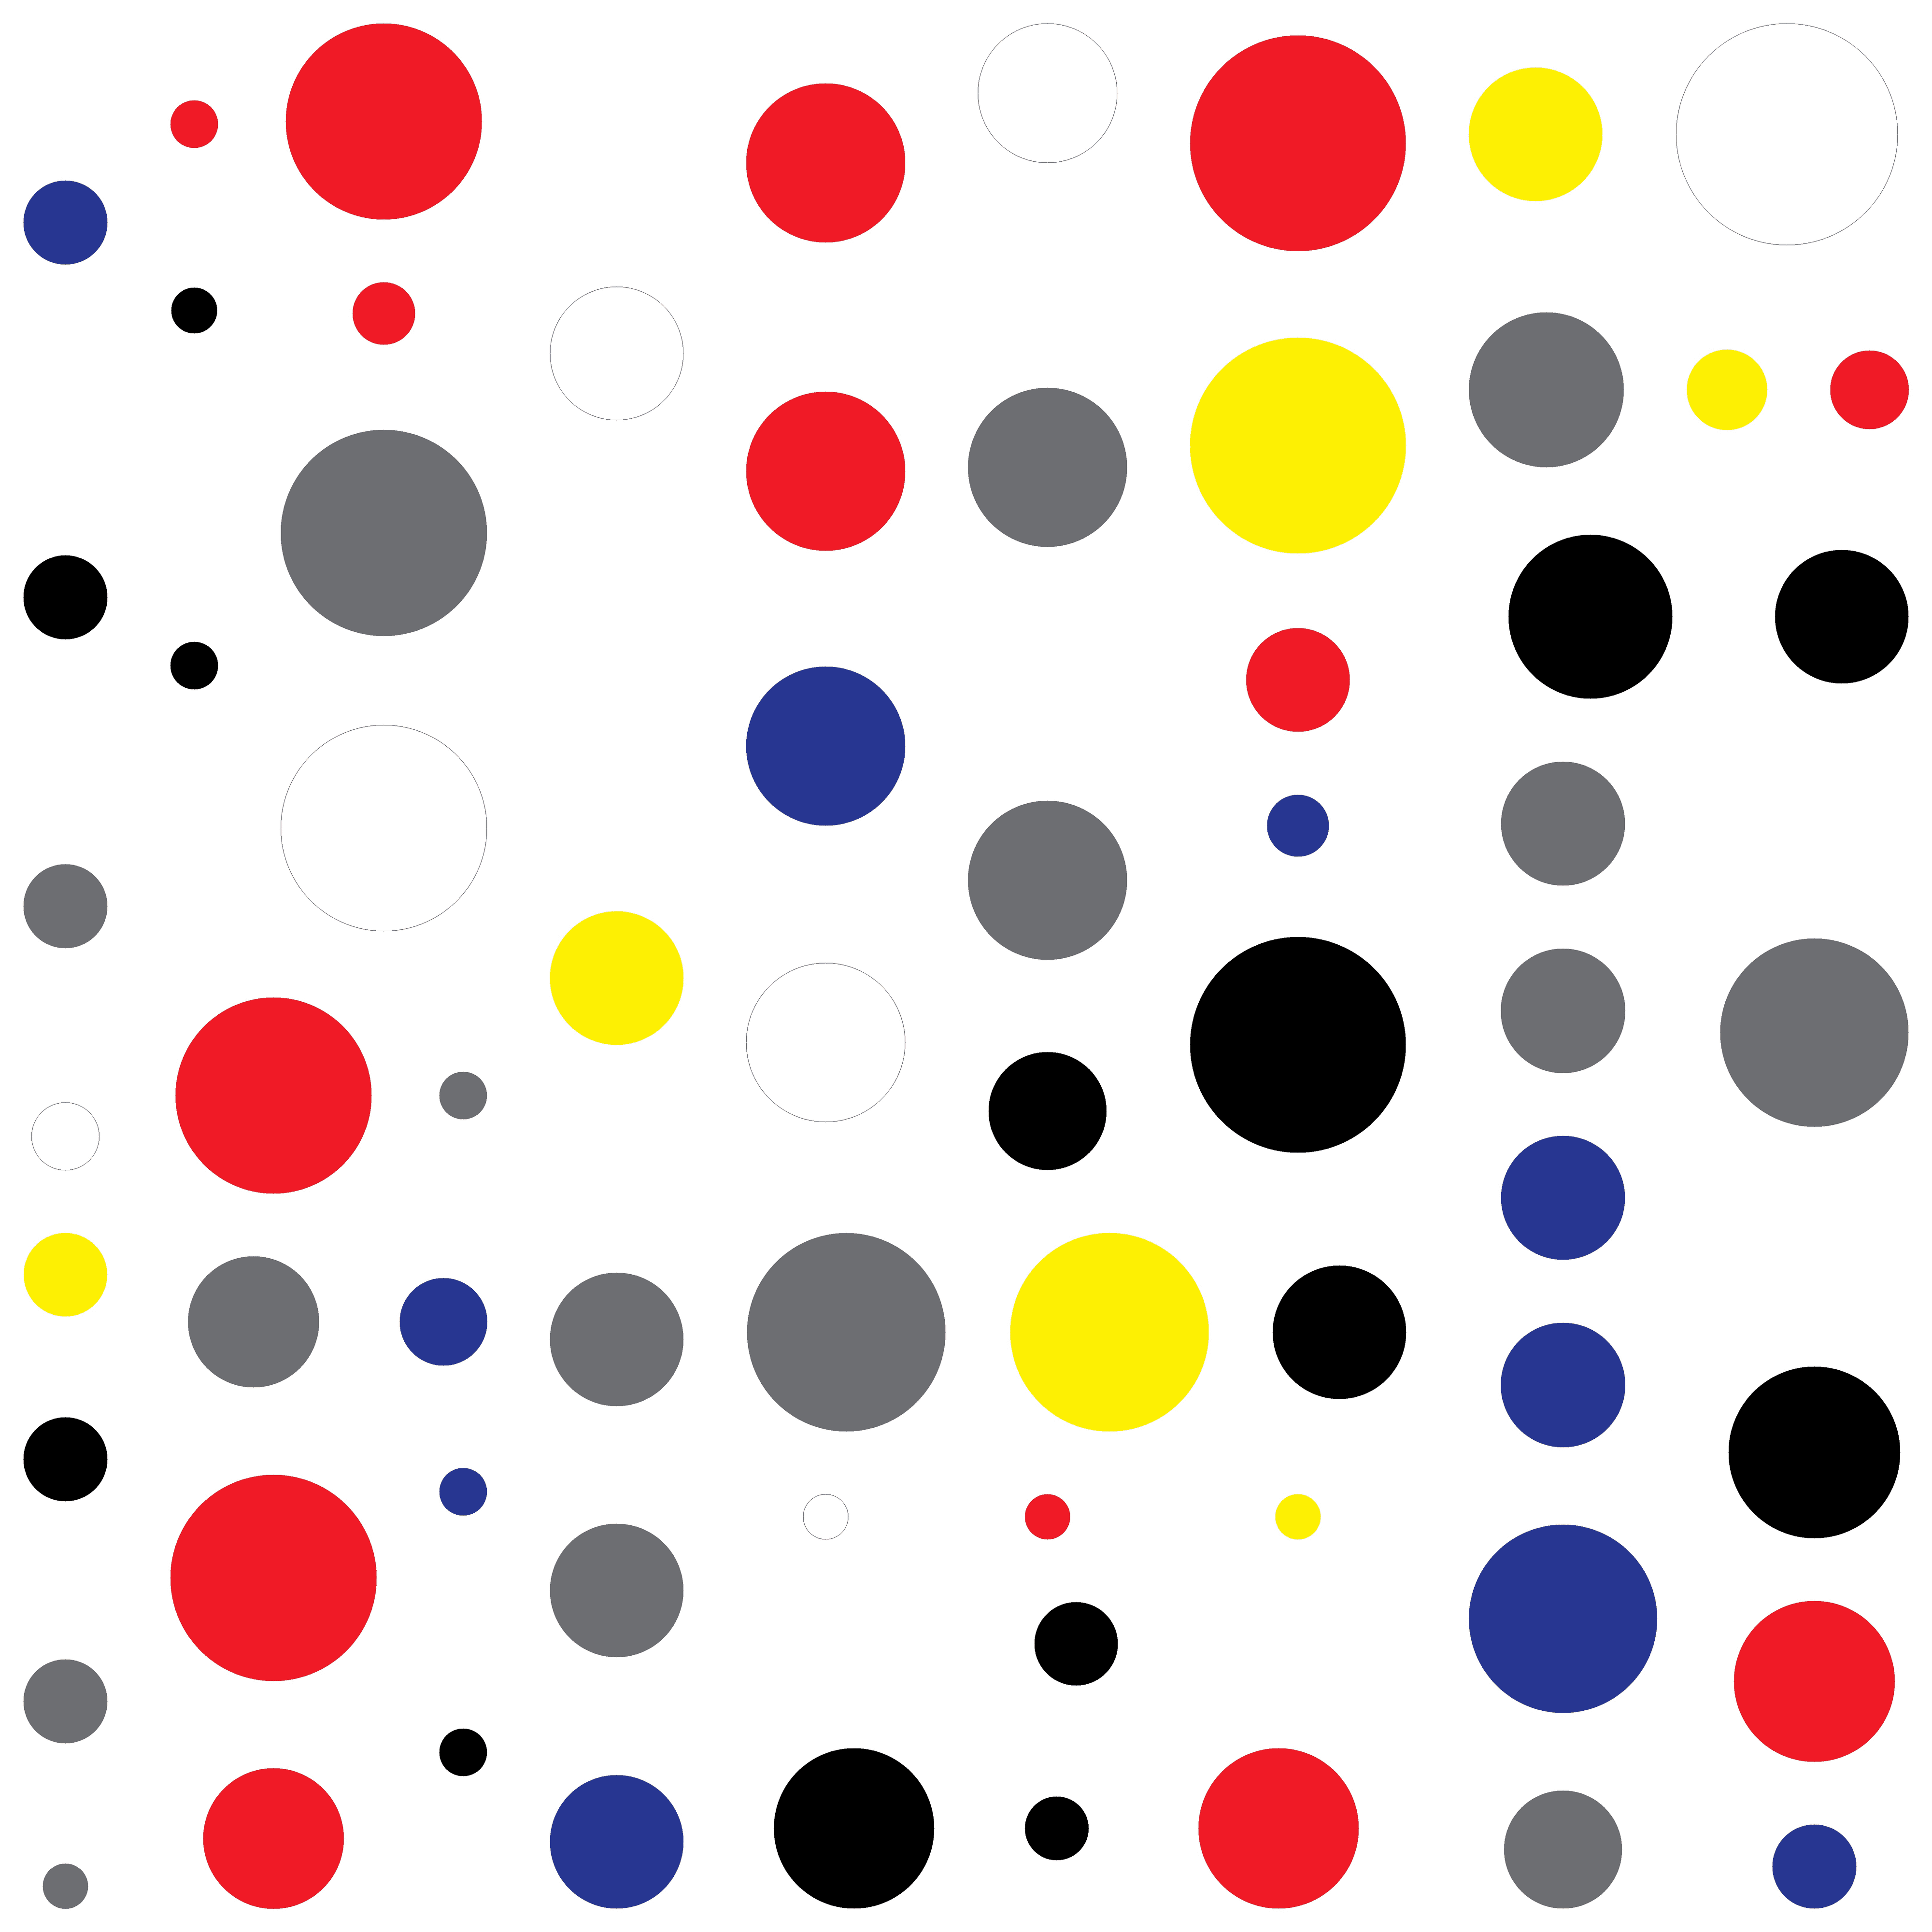 'Number 68' - Circles - MooniTooki Project - Abstract NFT Art @ 6480 x 6480 pixels.